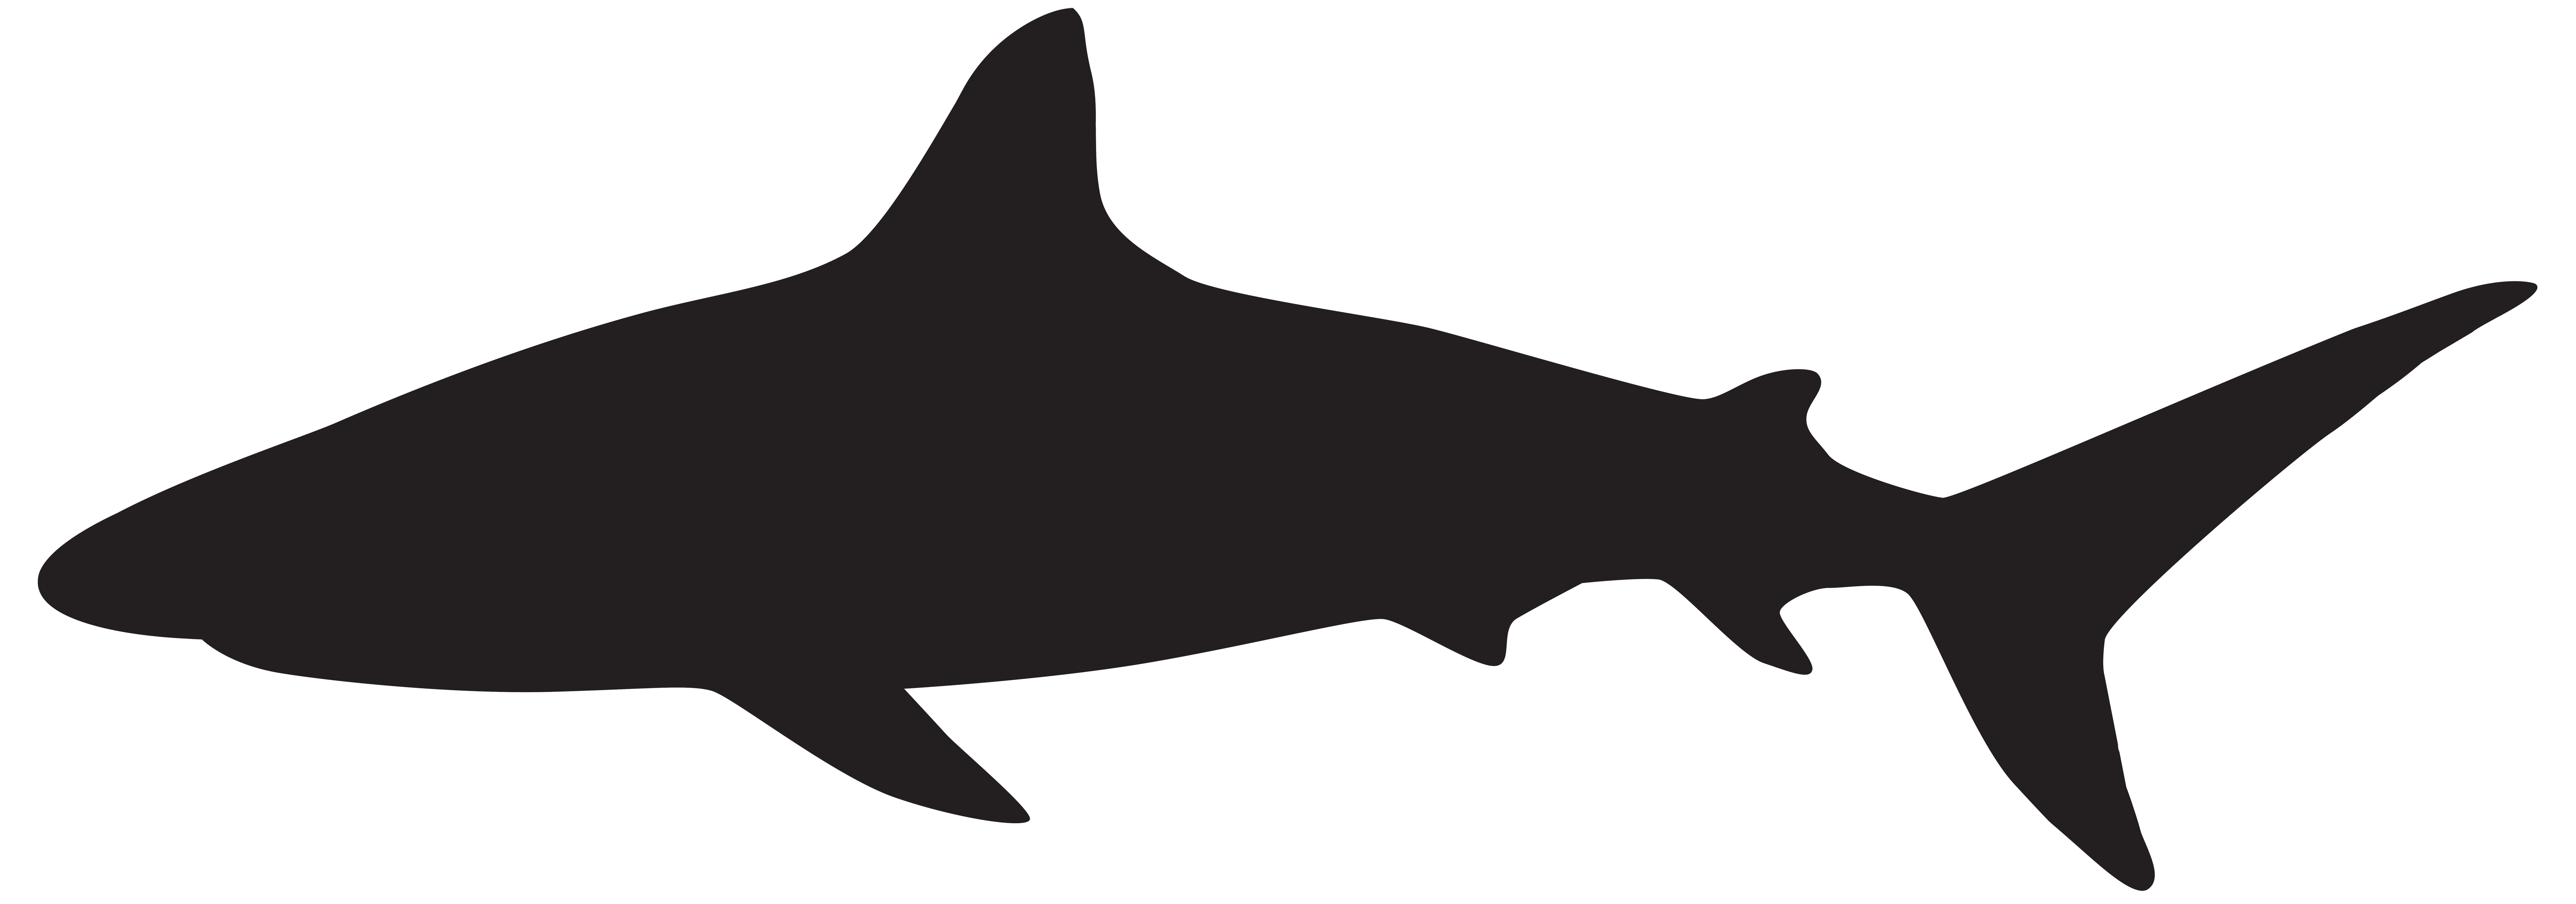 Great white shark Silhouette Clip art.